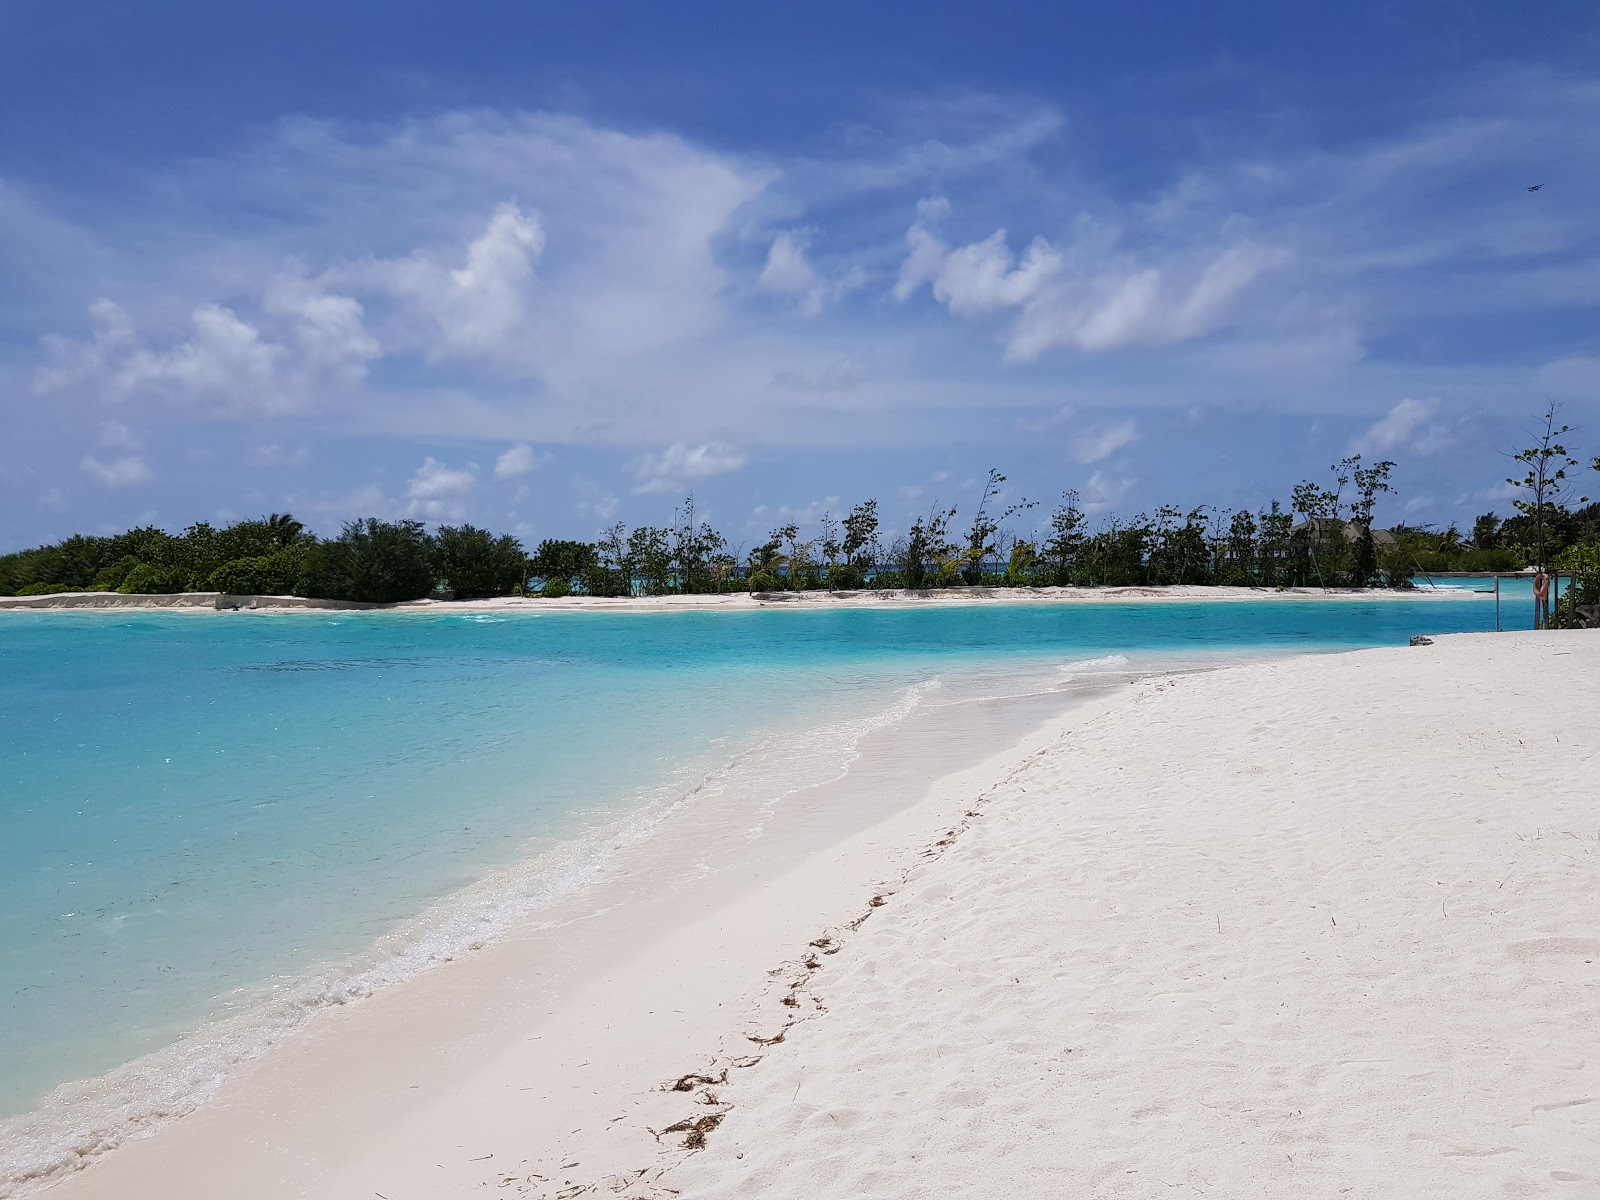 Foto von Kuda Huraa Resort Island mit weißer sand Oberfläche